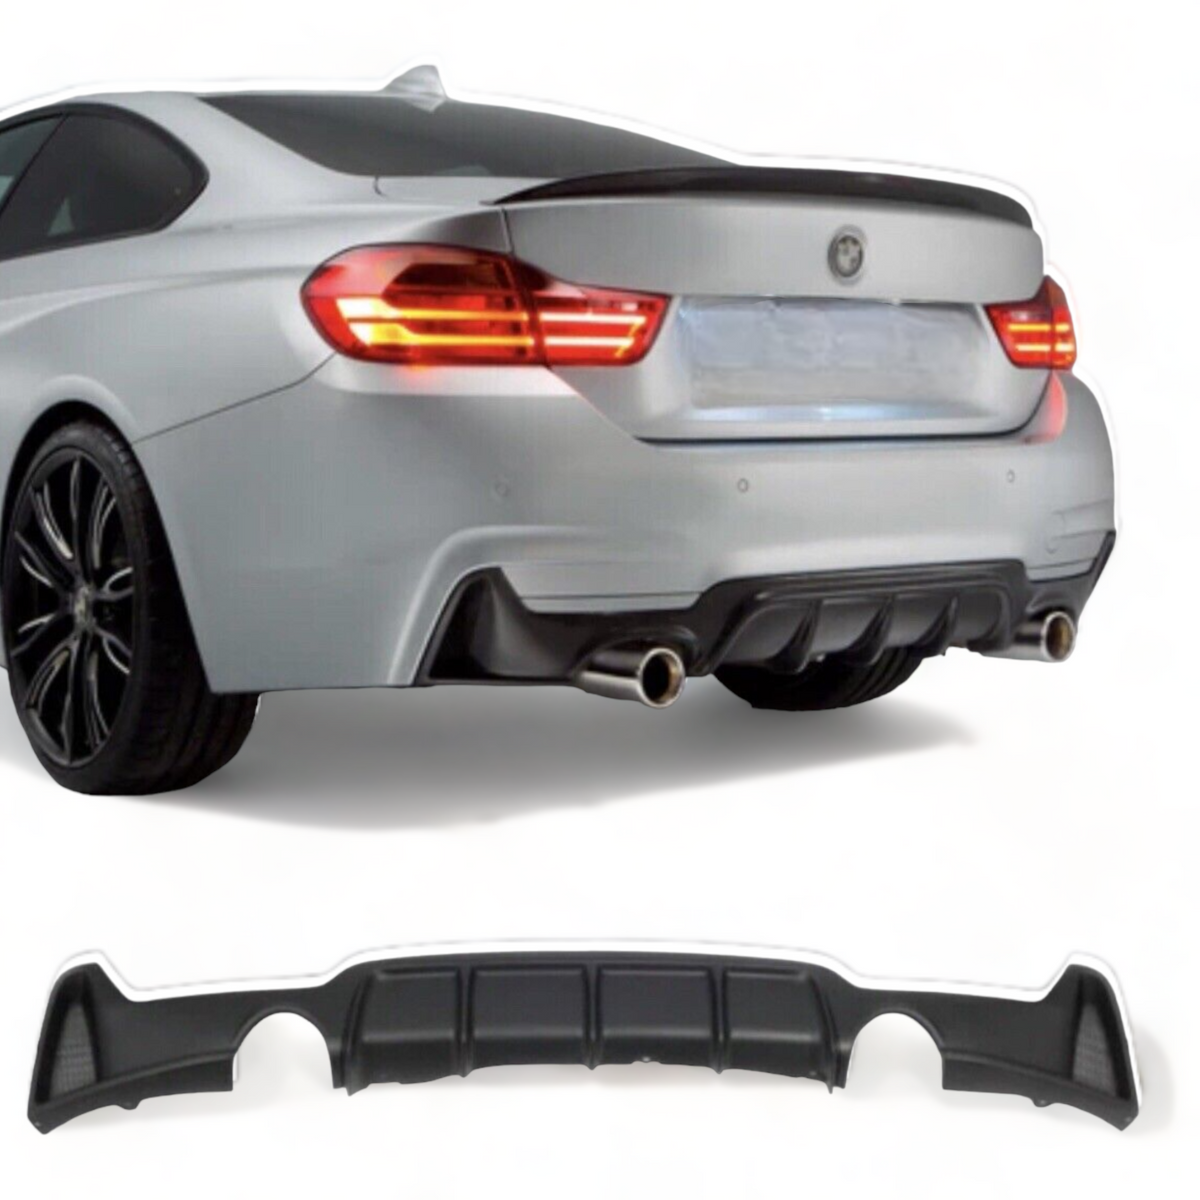 Rear Diffuser - Dual Exit - Fits BMW F32 F33 F36 - 4 Series - Matte Black